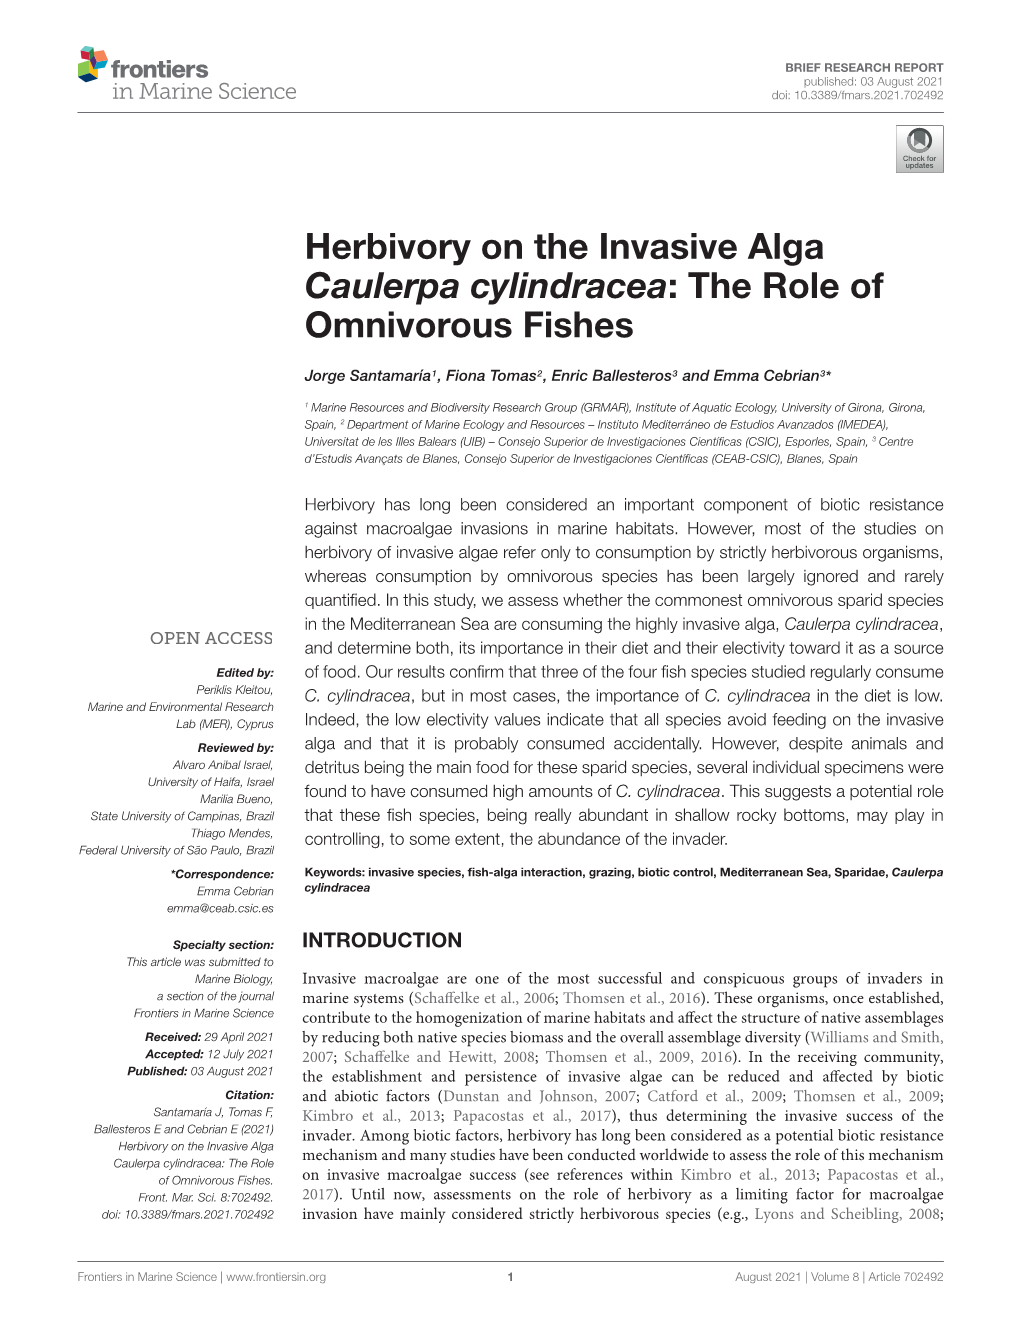 Herbivory on the Invasive Alga Caulerpa Cylindracea: the Role of Omnivorous Fishes